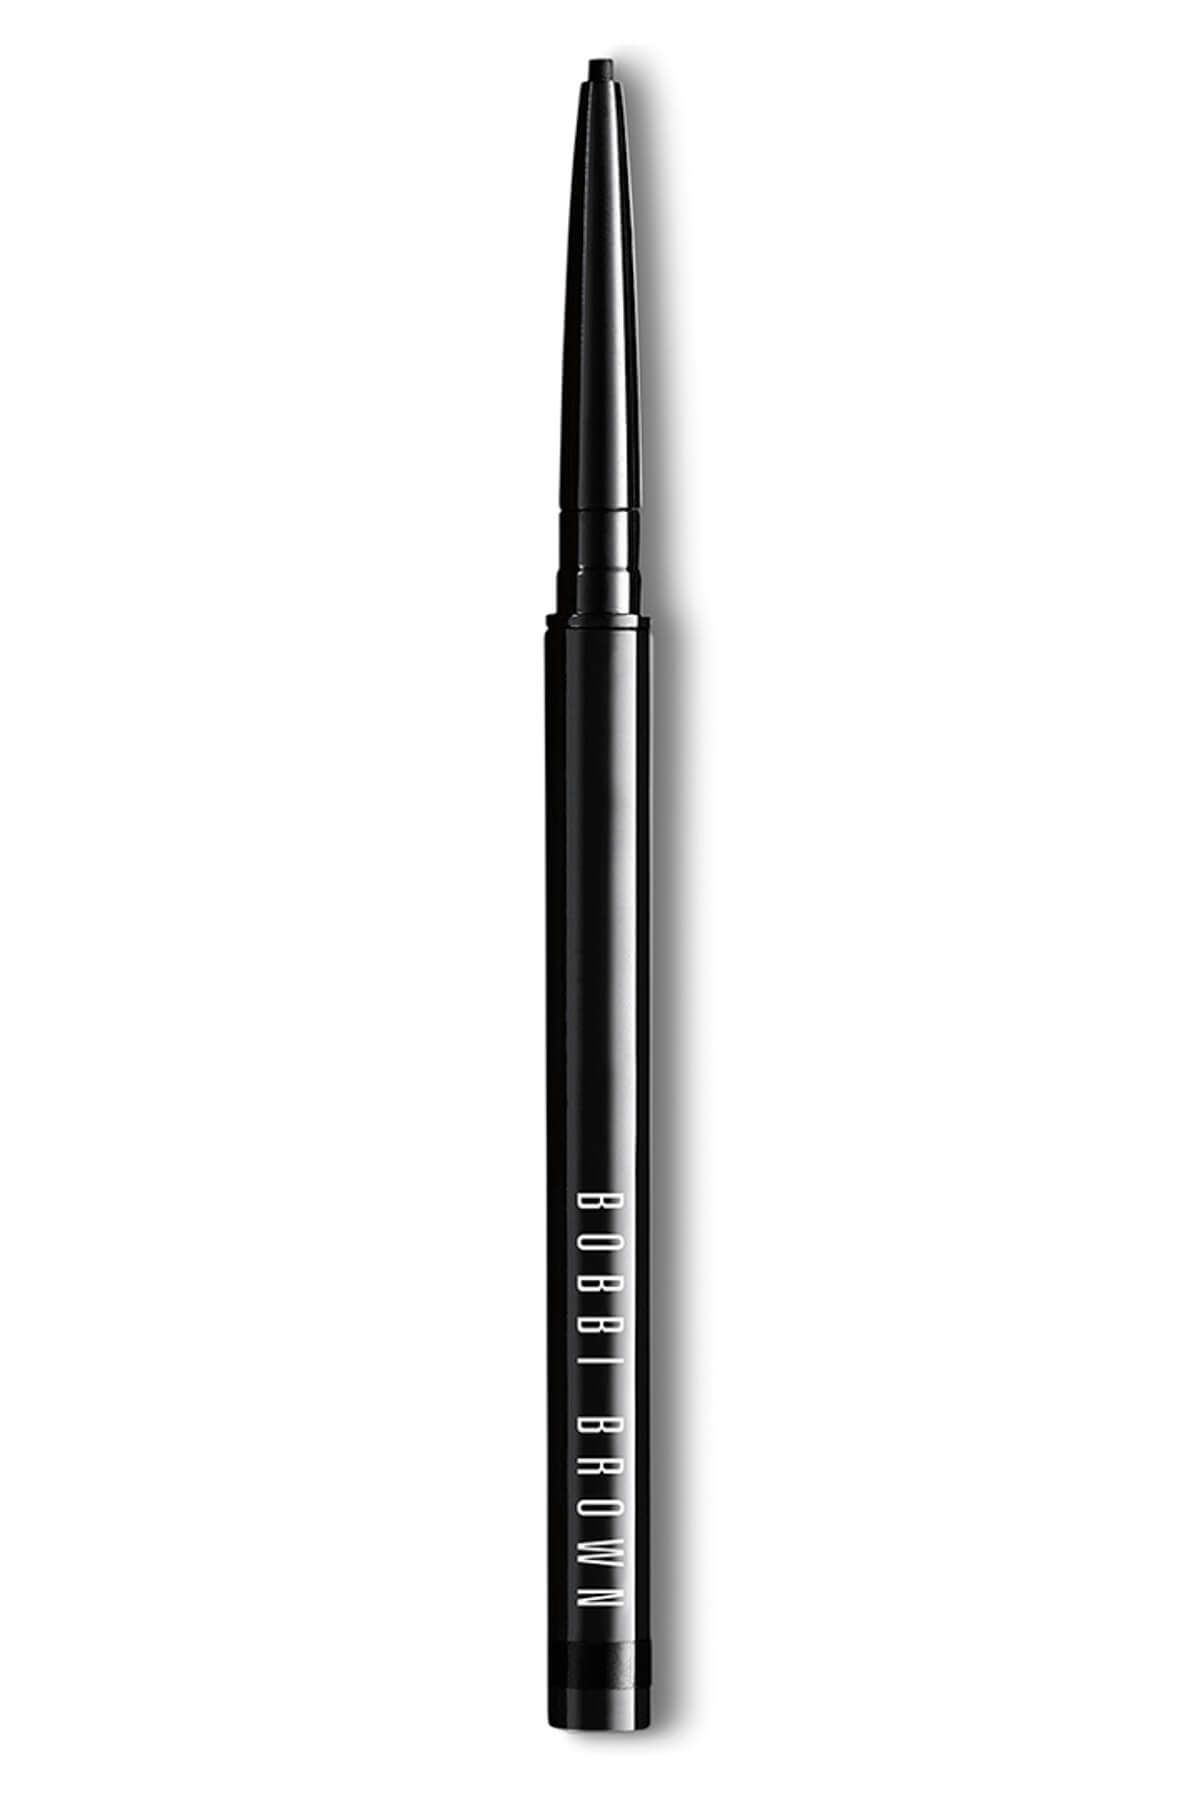 Bobbi Brown Eyeliner - Long Wear Waterproof Liner Black Smoke 0.02 oz. 716170179445 47685